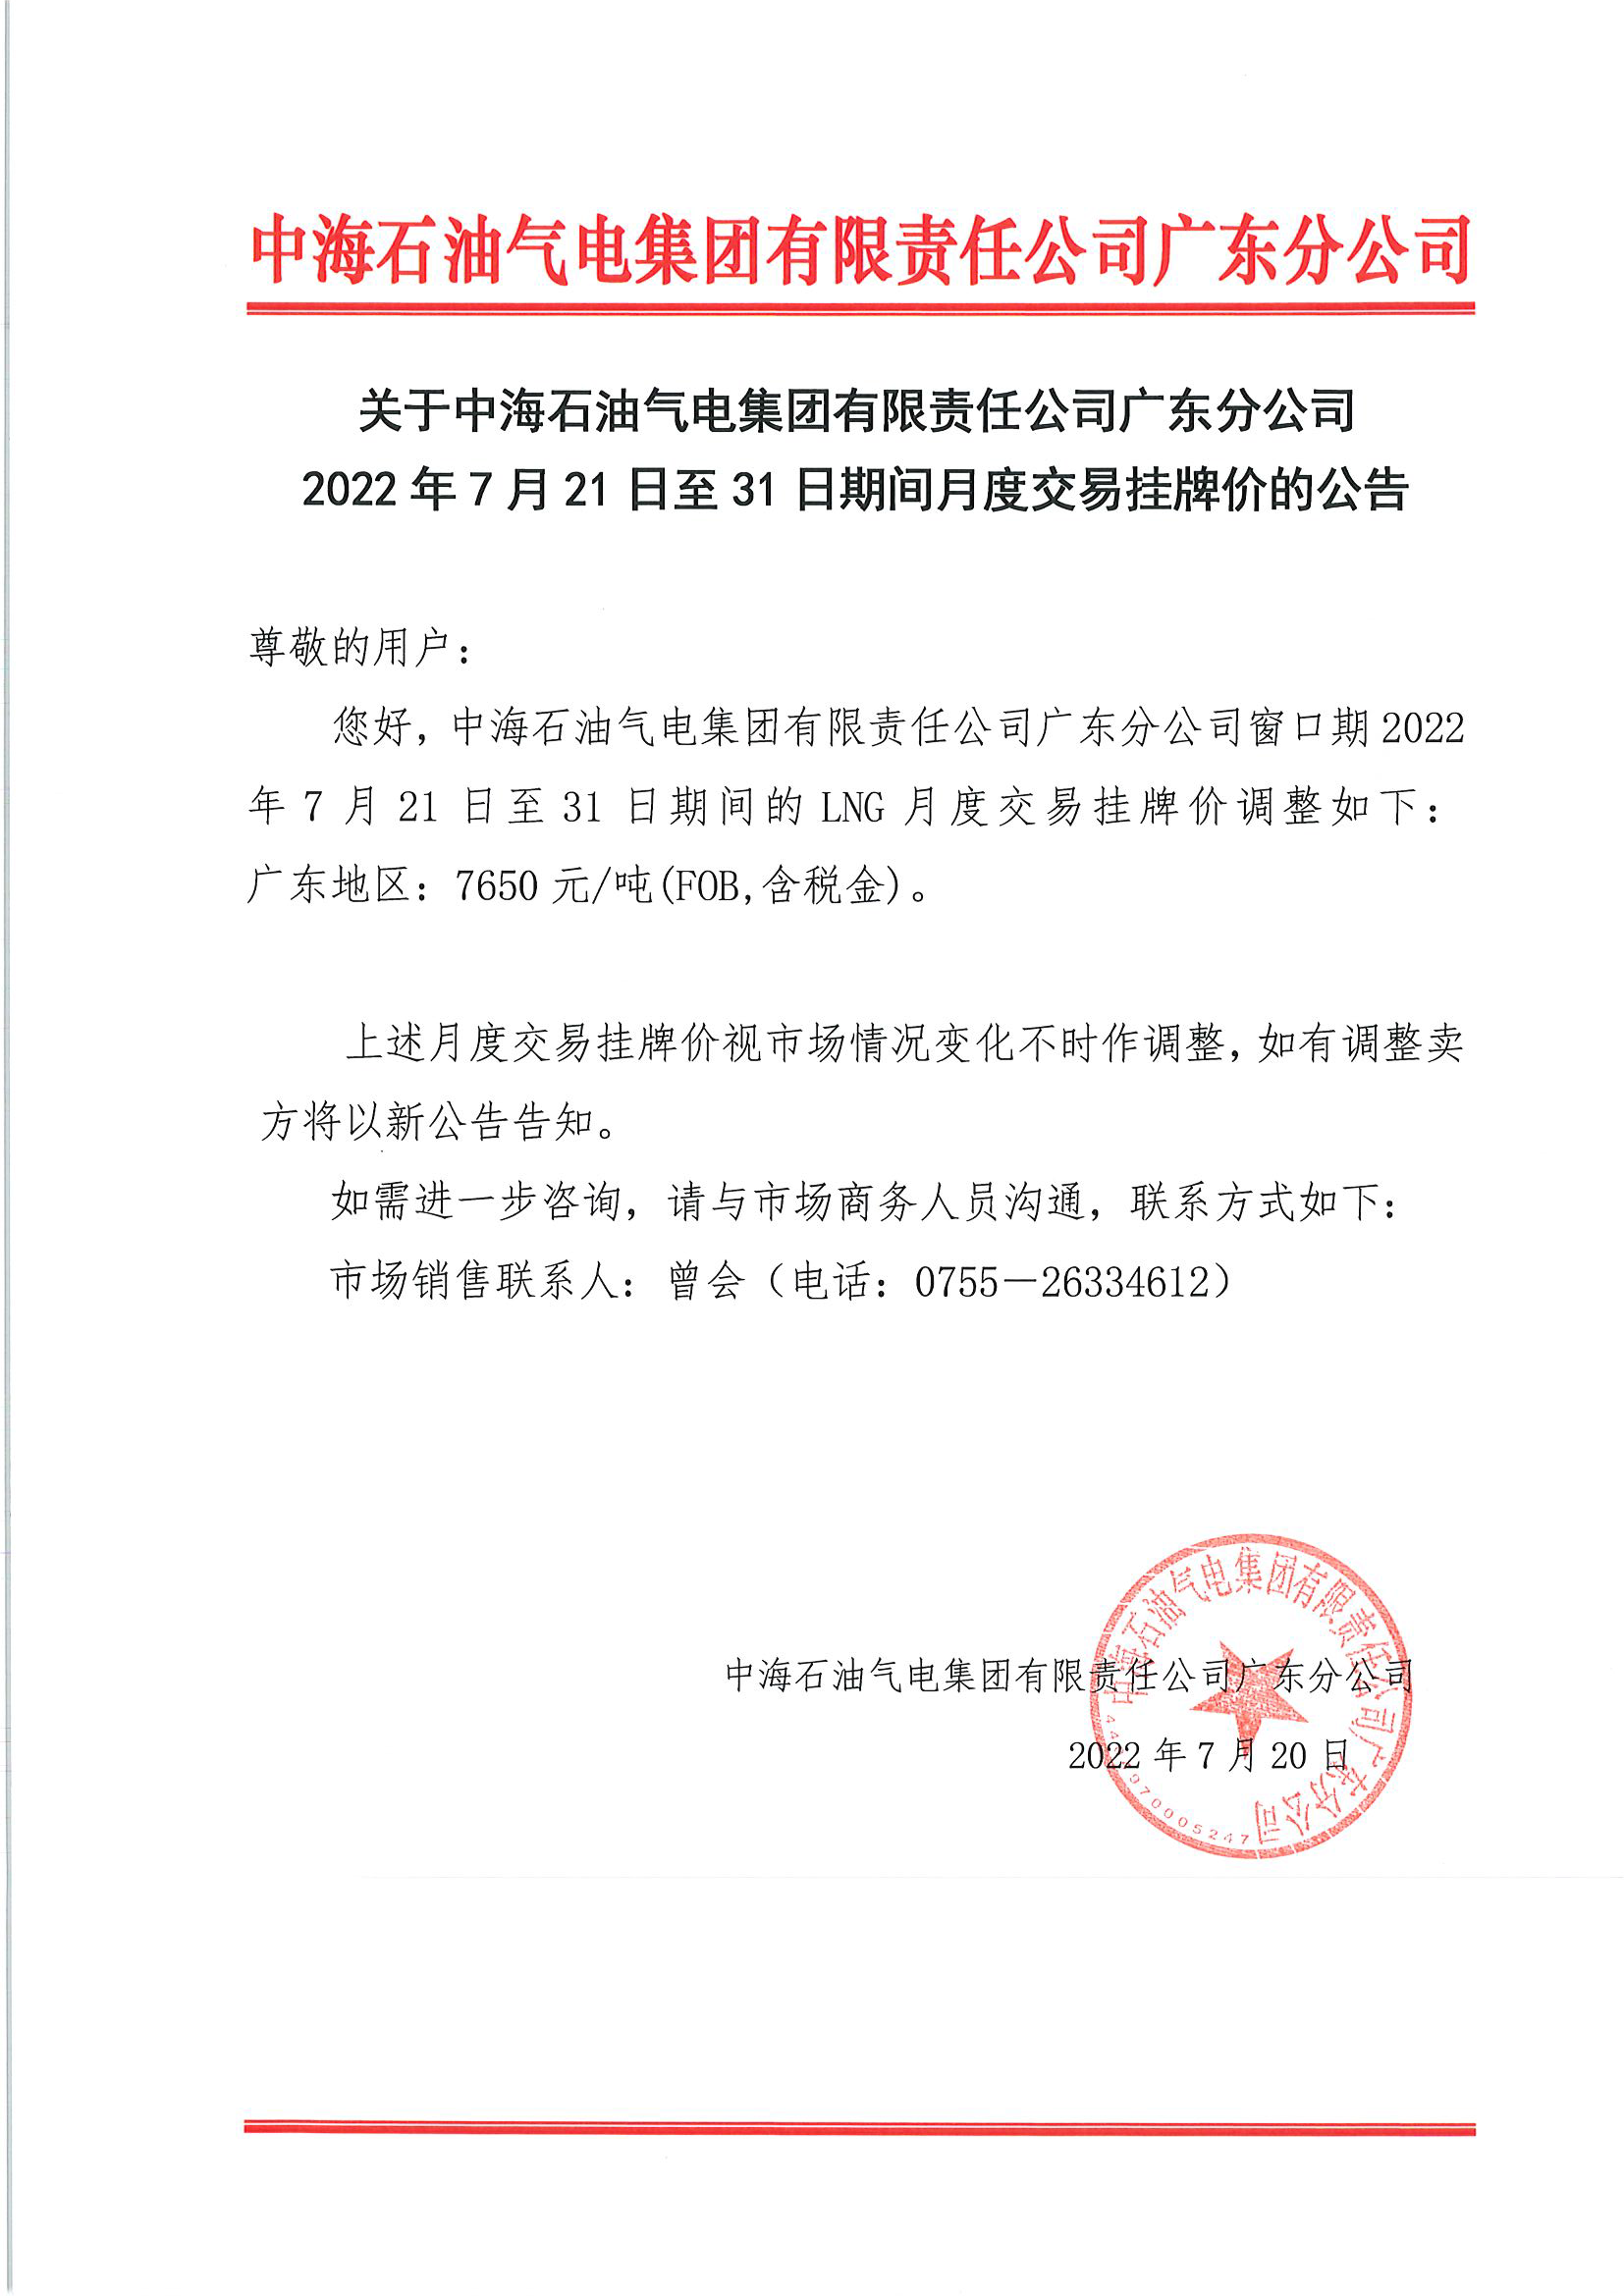 中海油广东分公司关于2022年7月21日至31日液态销售价格的公告.png